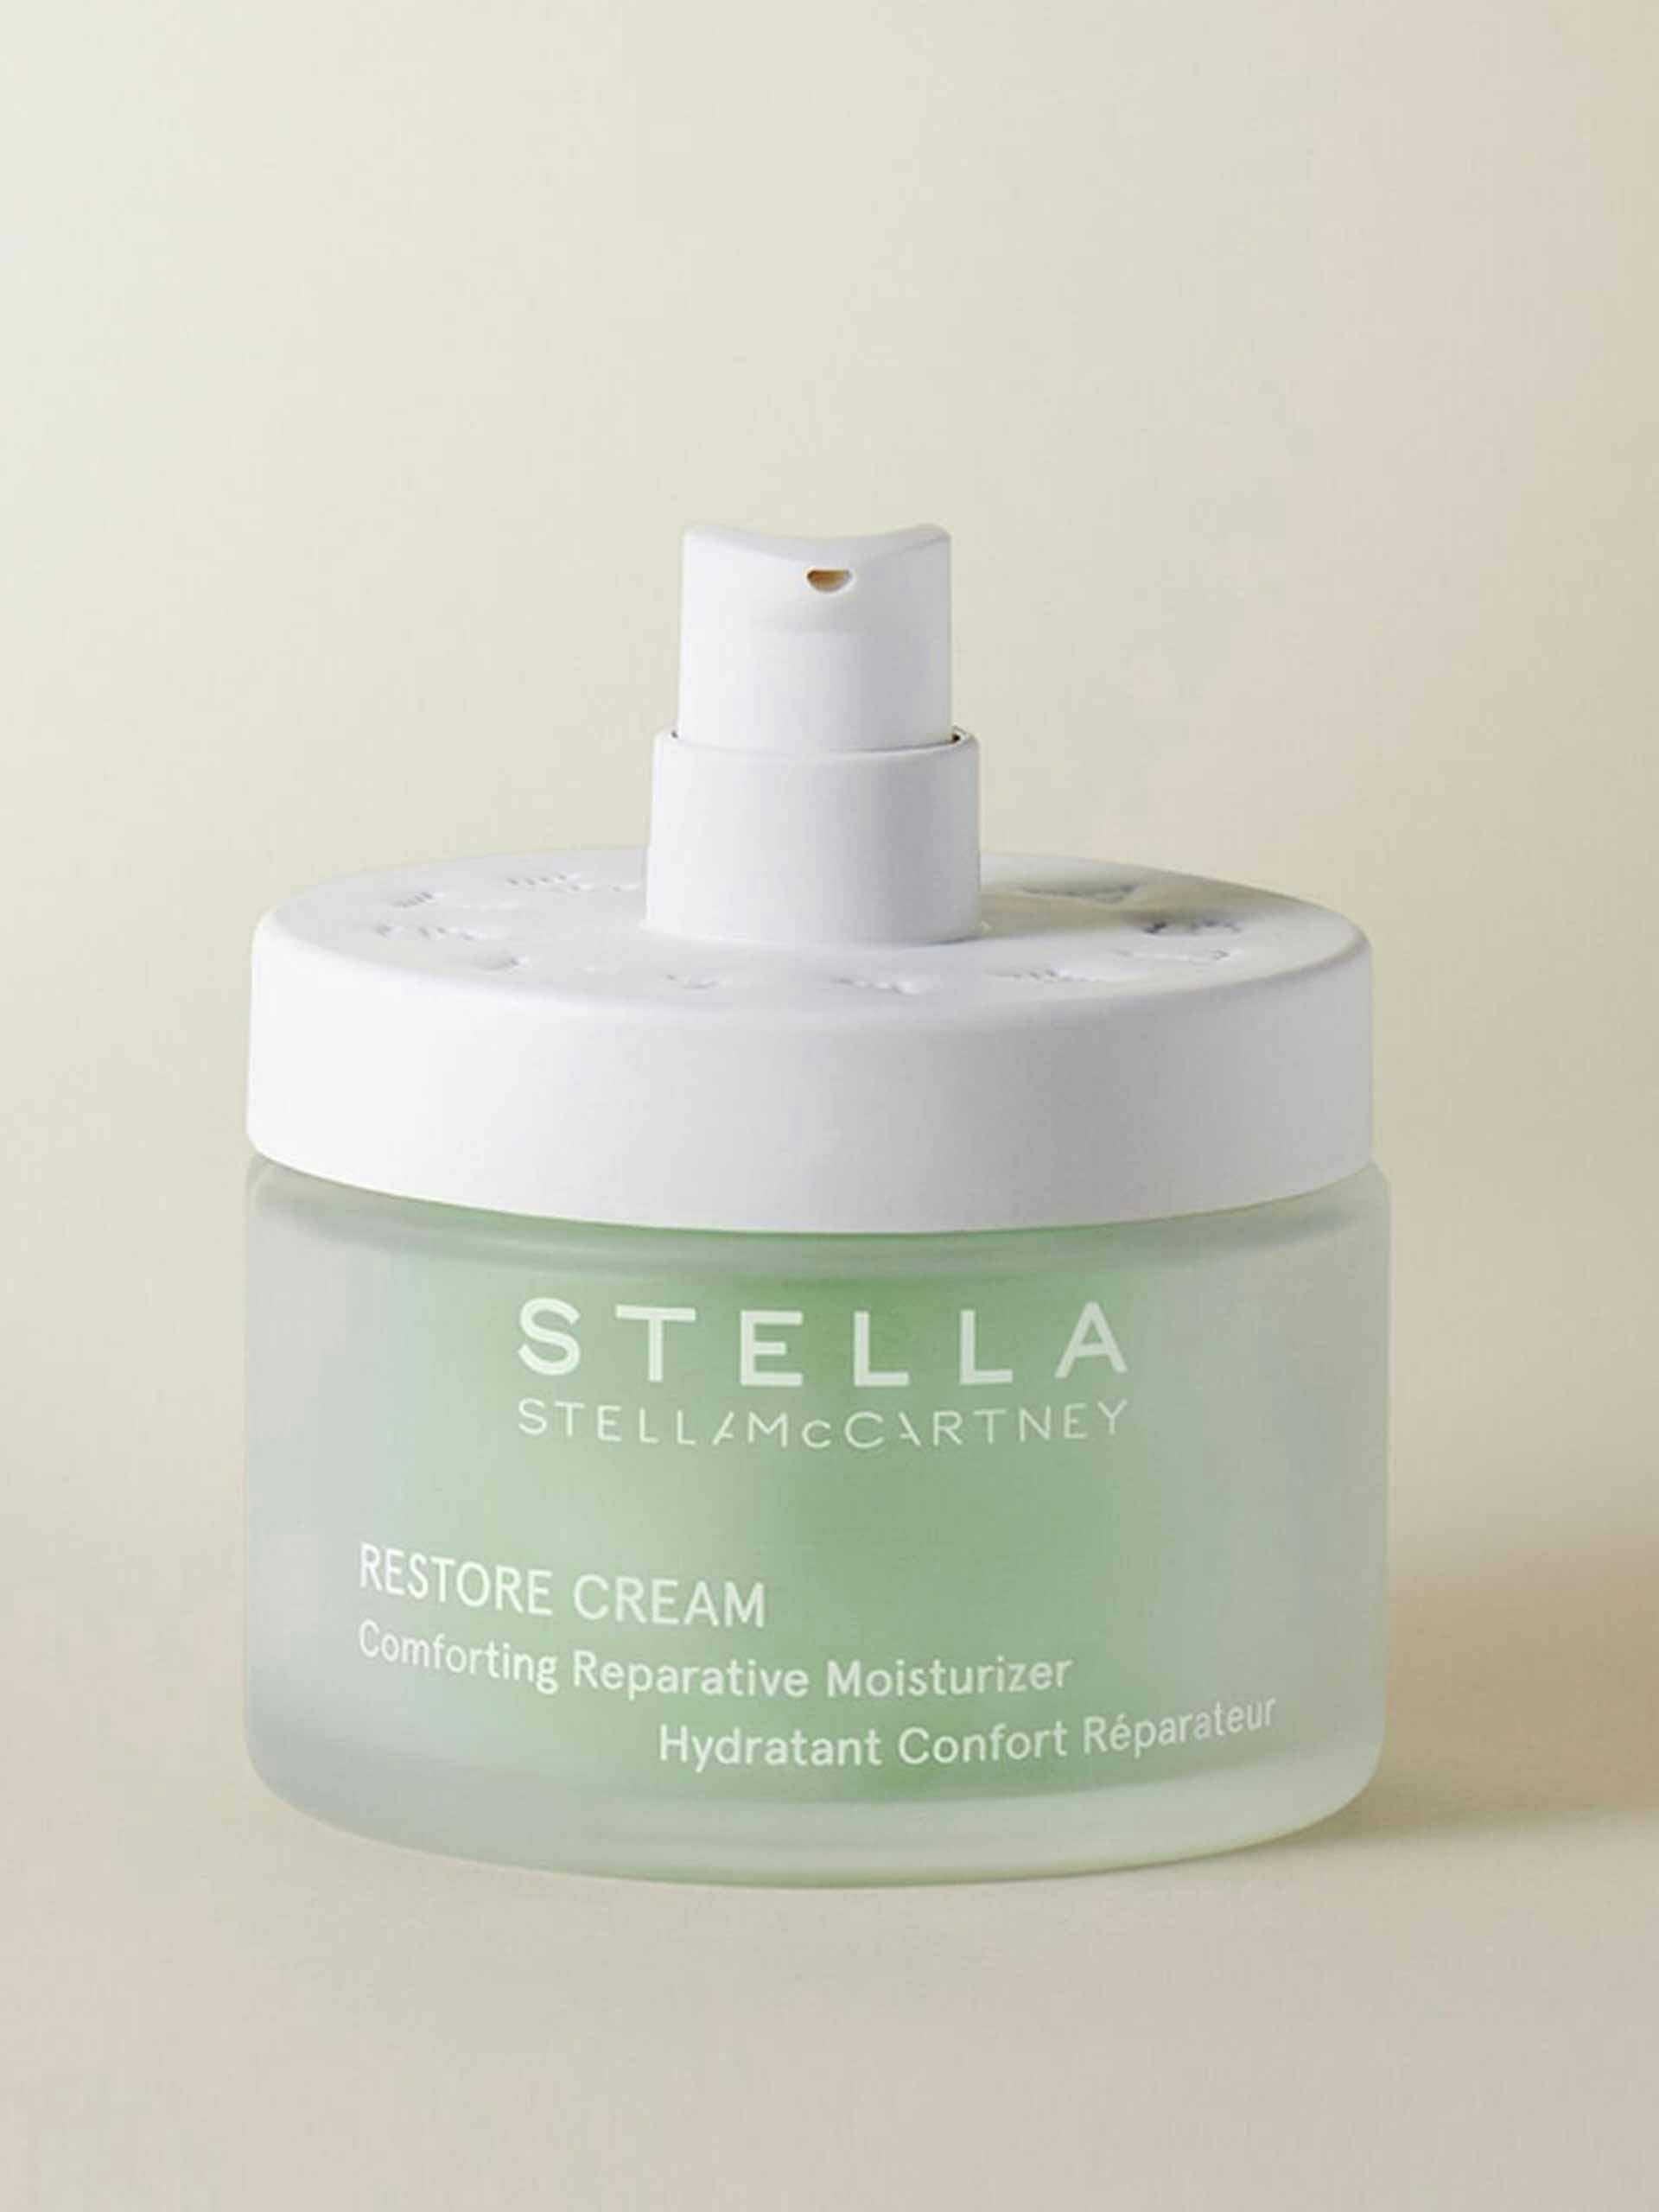 Restore cream